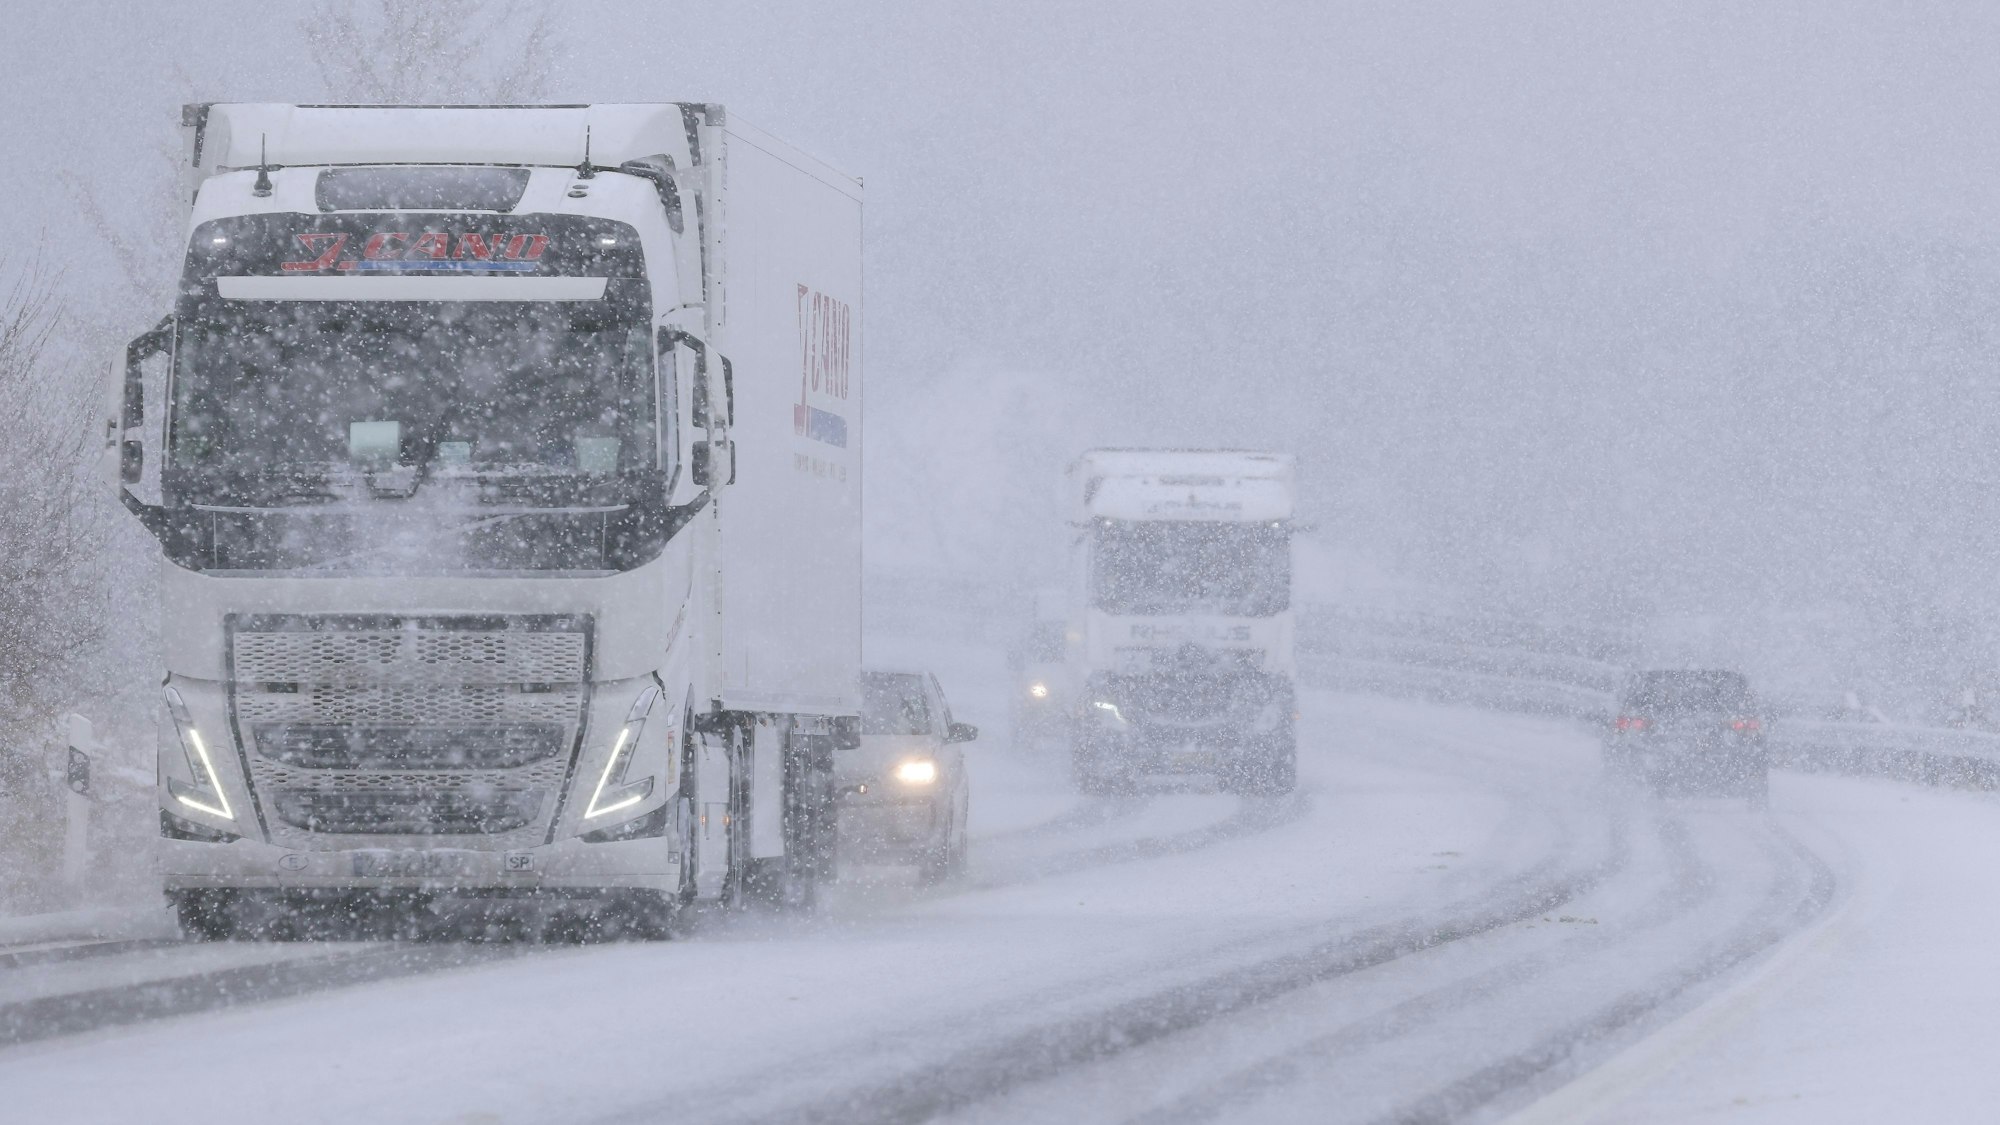 Mehrere Fahrzeuge sind bei starkem Schneefall auf einer Bundesstraße in der Eifel unterwegs. Die Fahrbahn ist zu großen Teilen mit Schnee bedeckt.